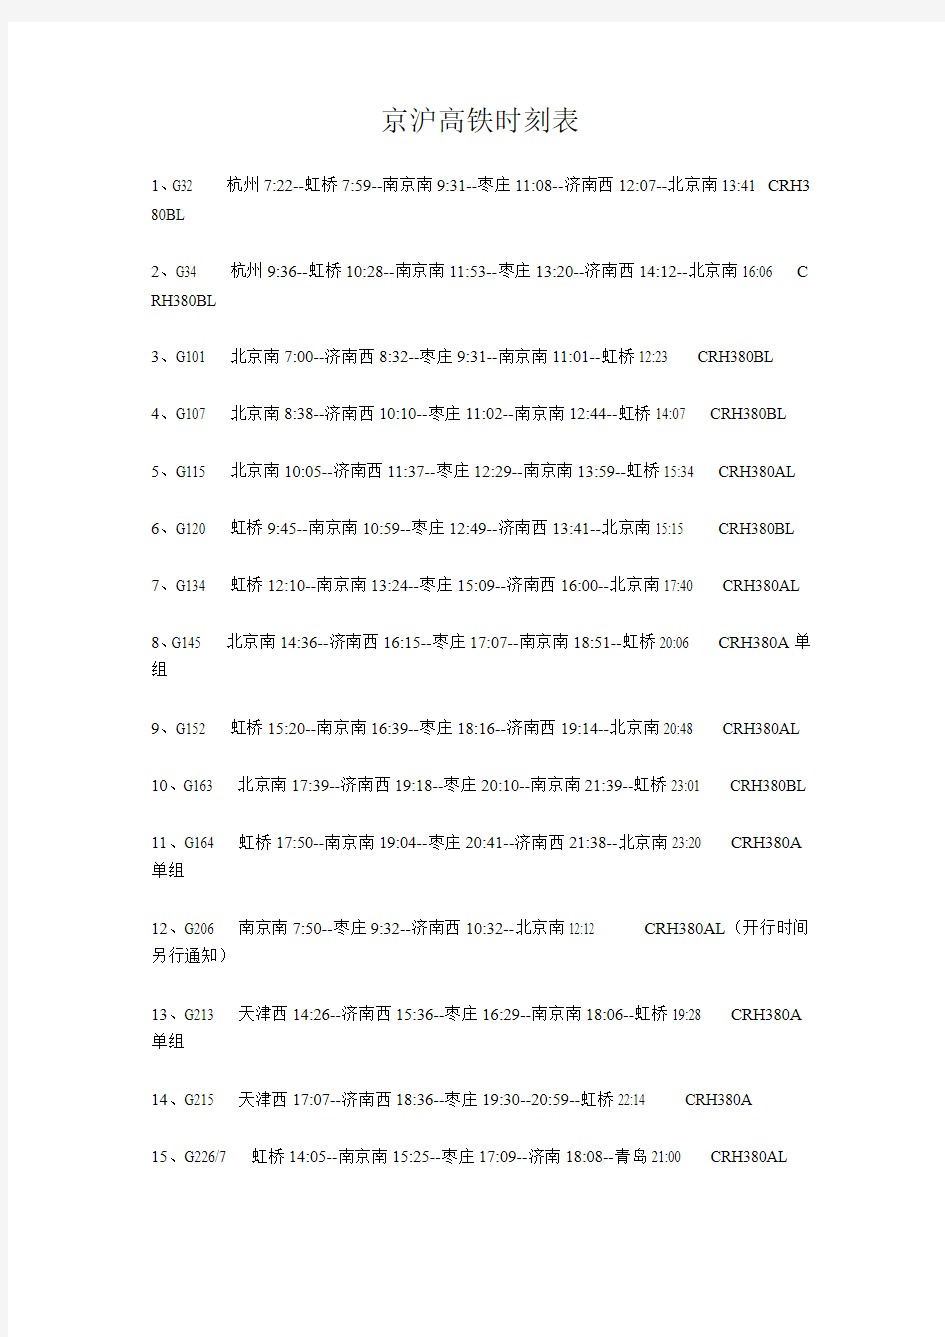 京沪高铁时刻表